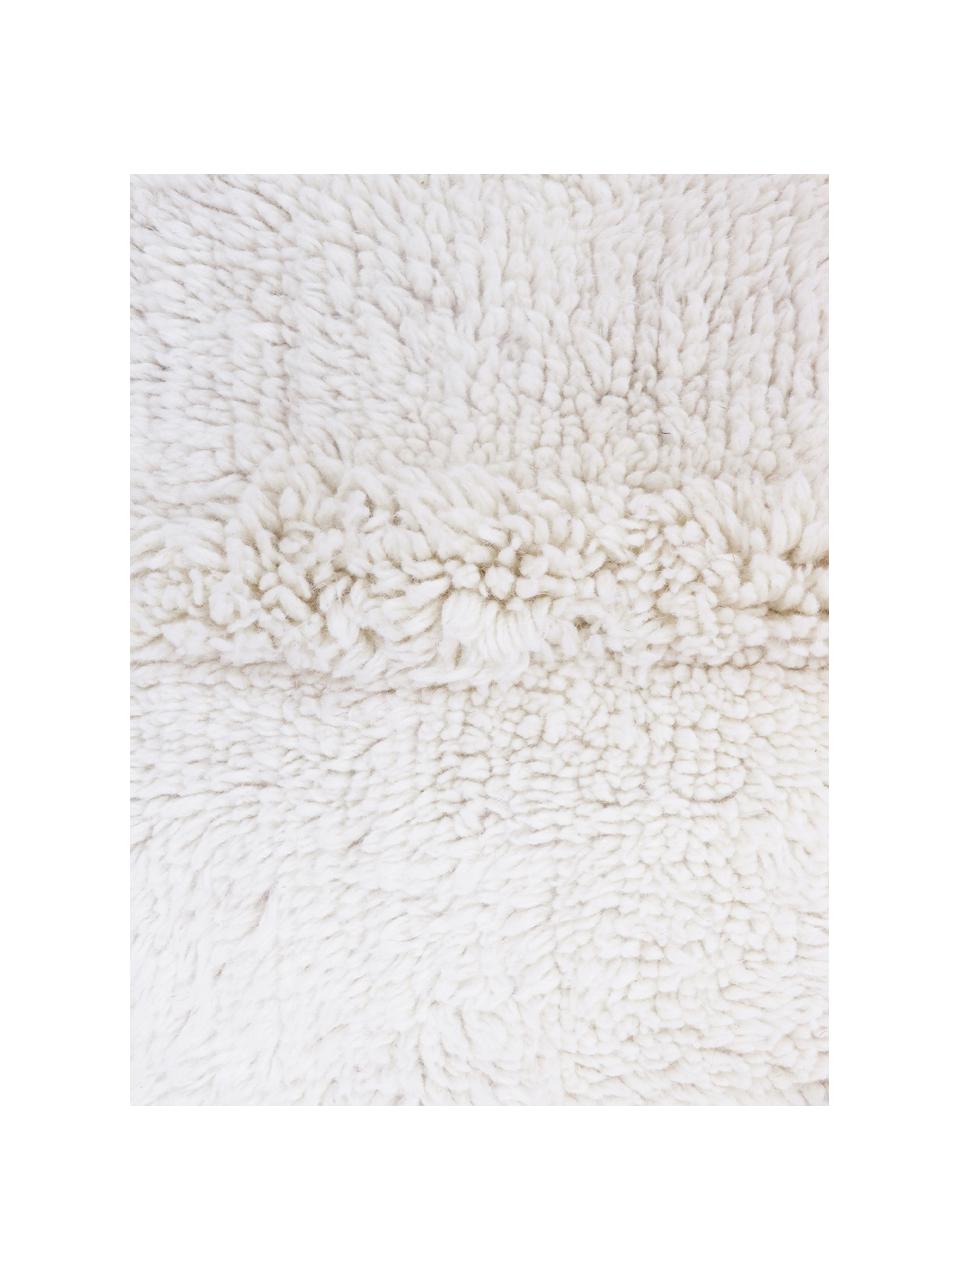 Tappeto in lana lavabile fatto a mano Tundra, Retro: cotone riciclato Nel caso, Bianco latte, Larg. 80 x Lung. 140 cm (taglia XS)